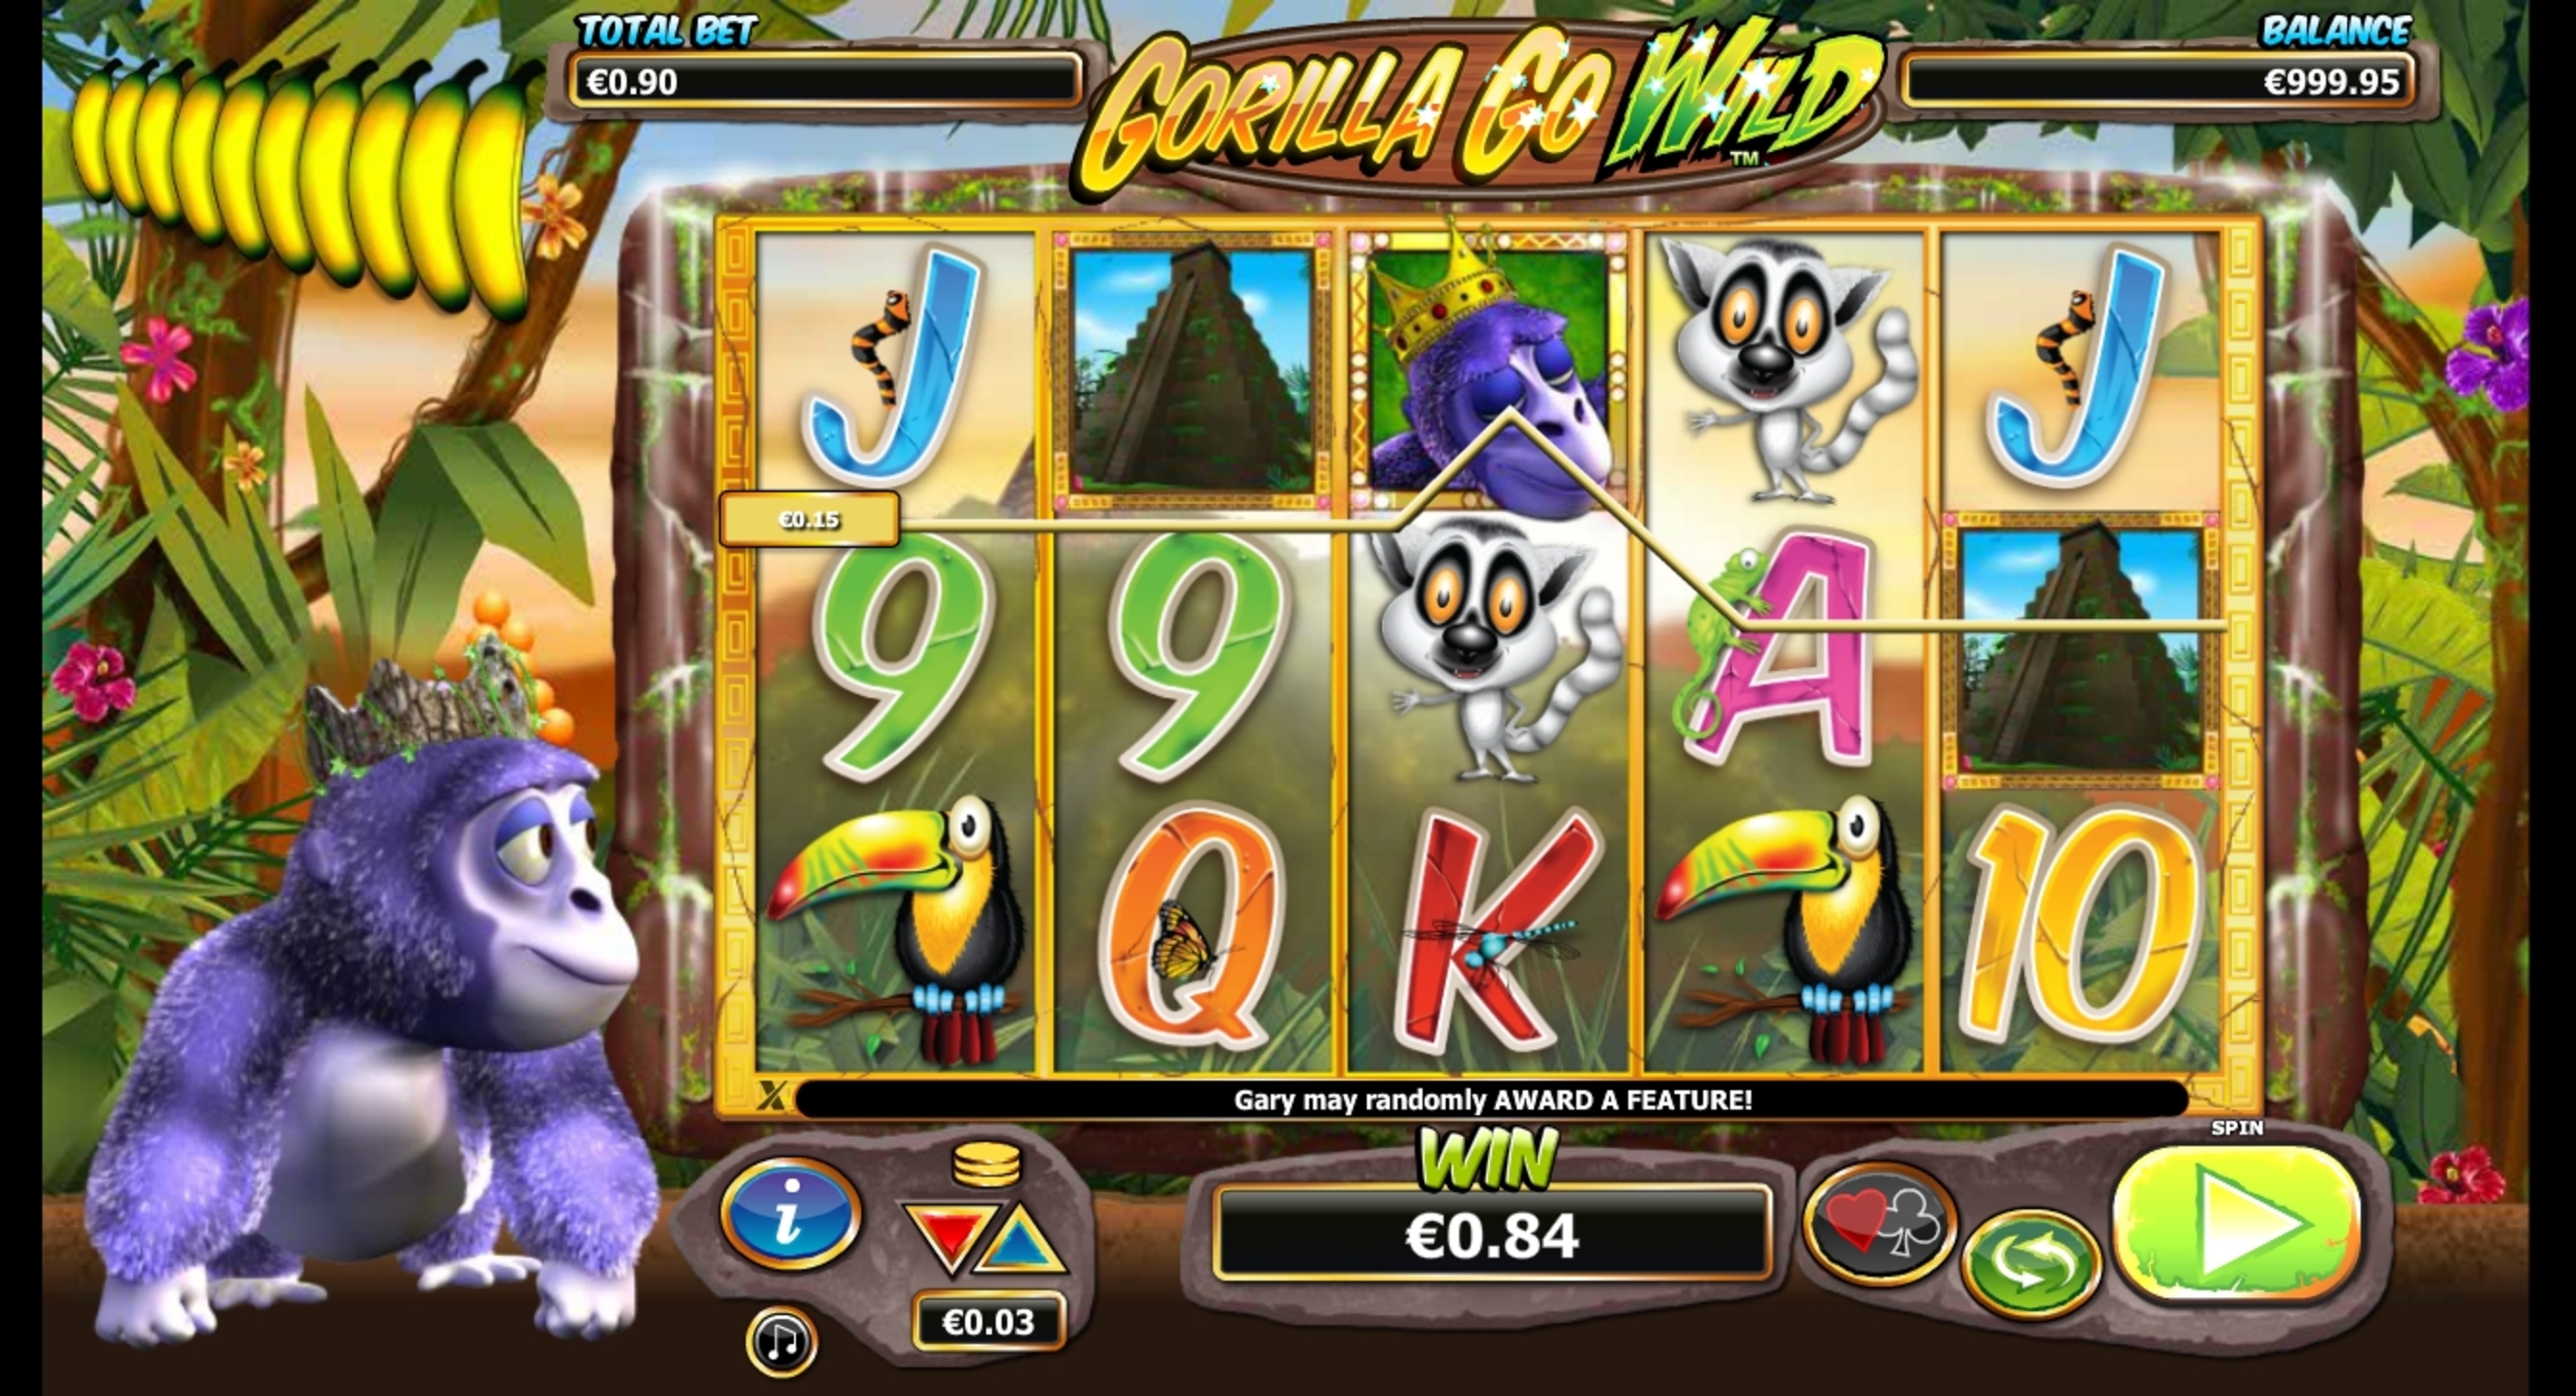 Win Money in Gorilla Go Wild Free Slot Game by NextGen Gaming